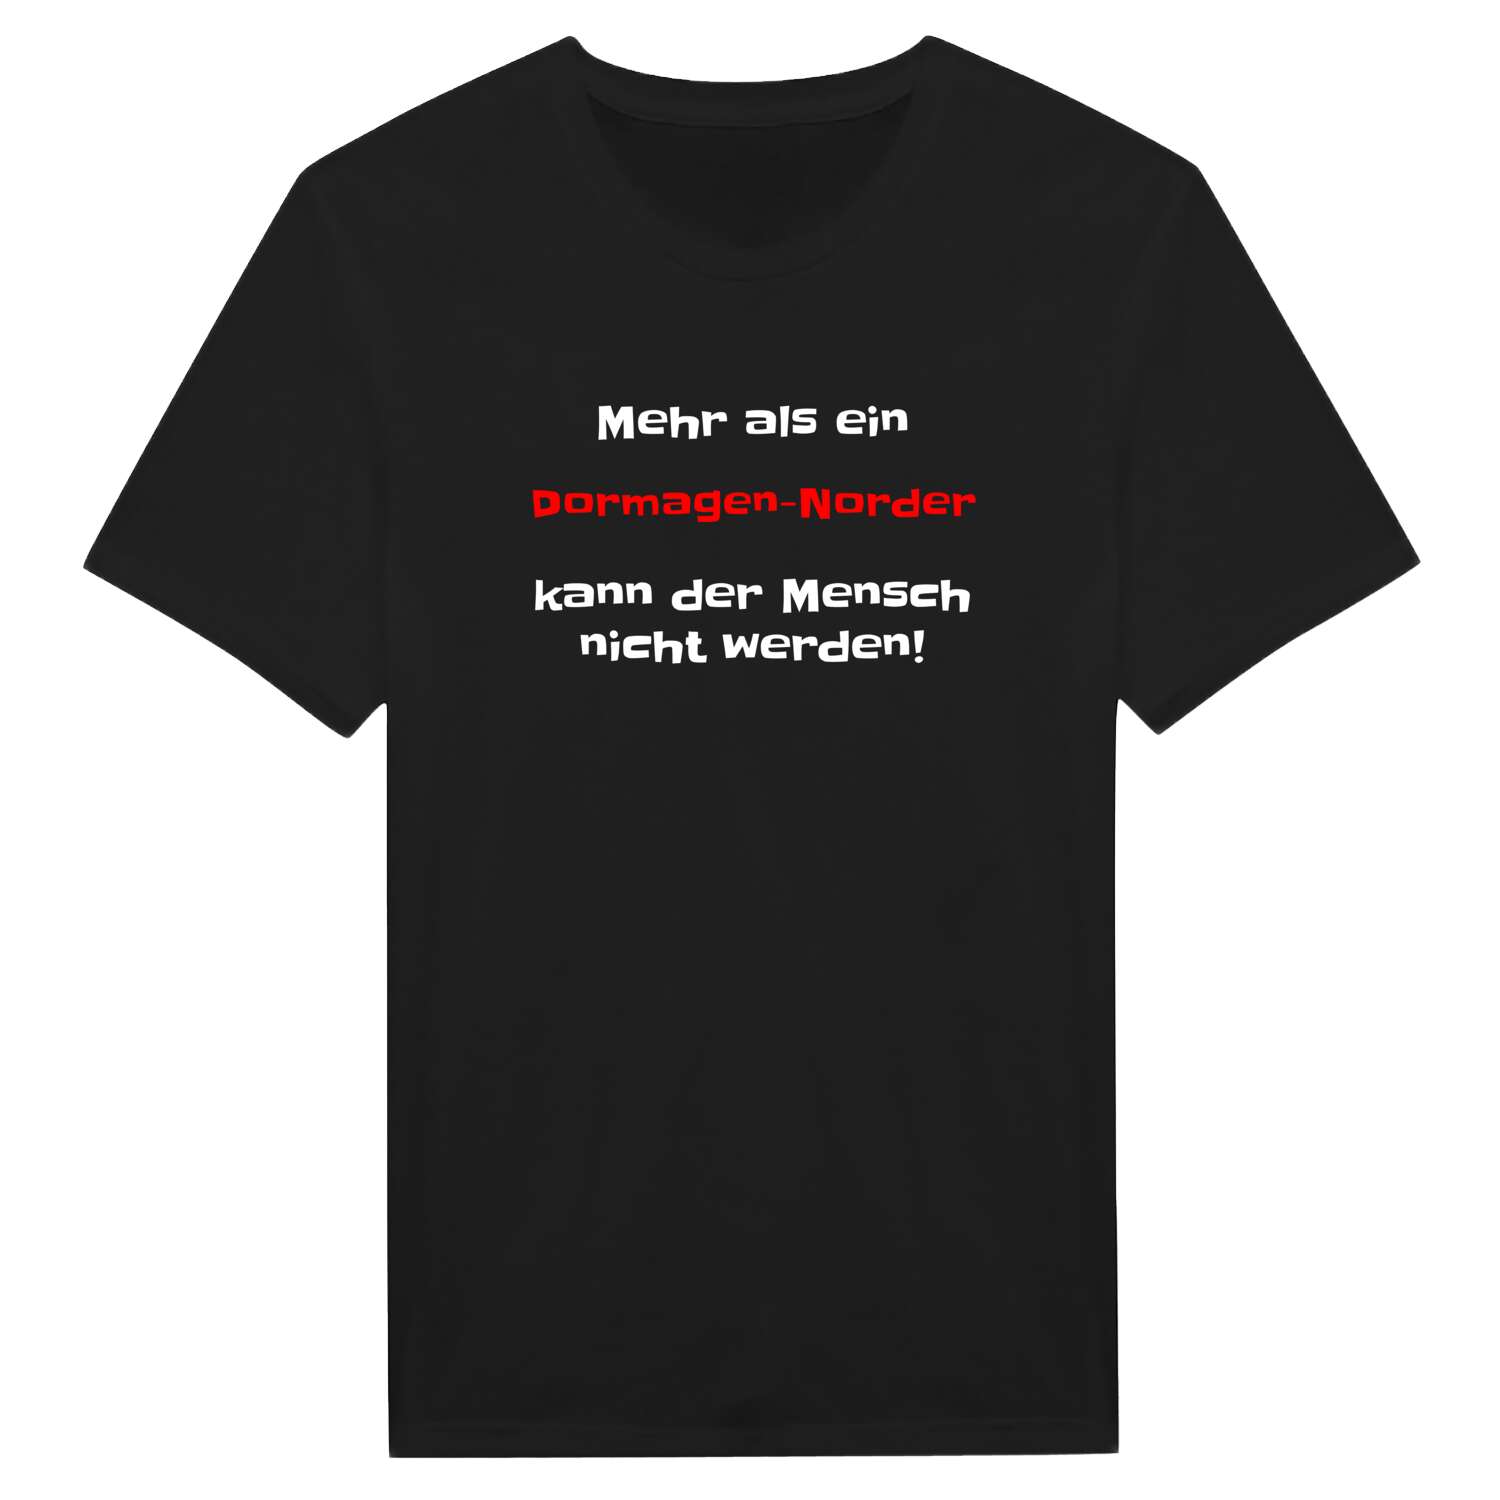 Dormagen-Nord T-Shirt »Mehr als ein«